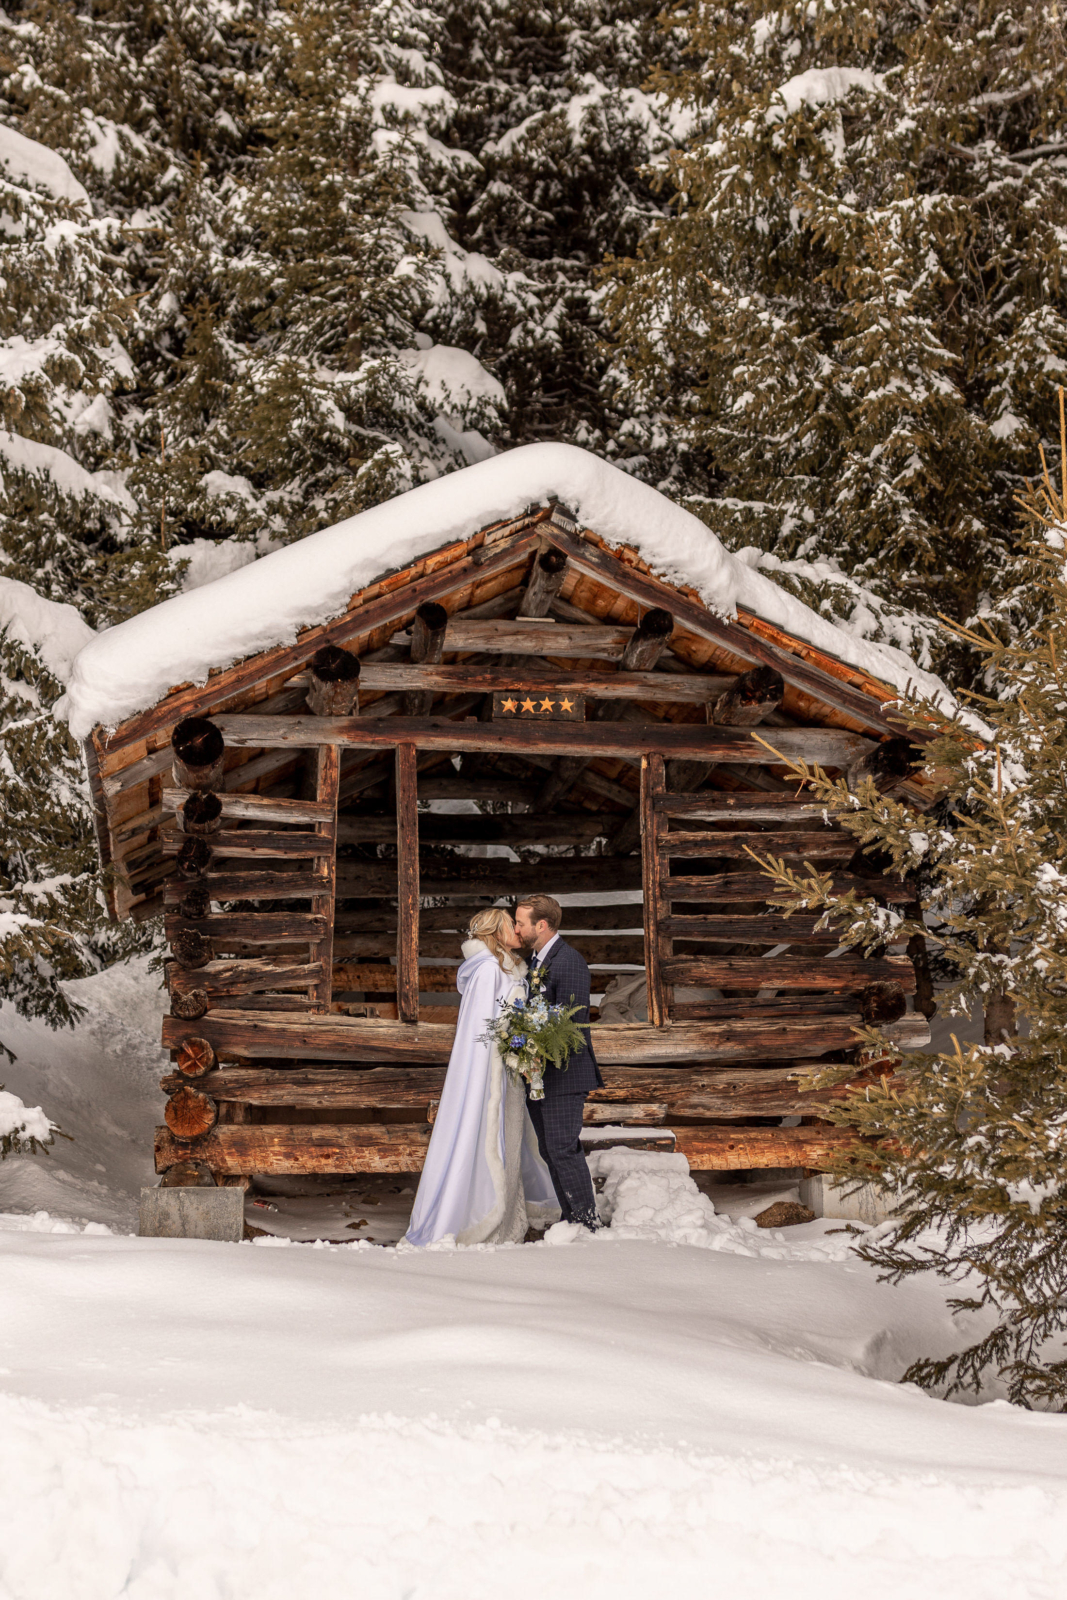 Winter Wedding in Austria